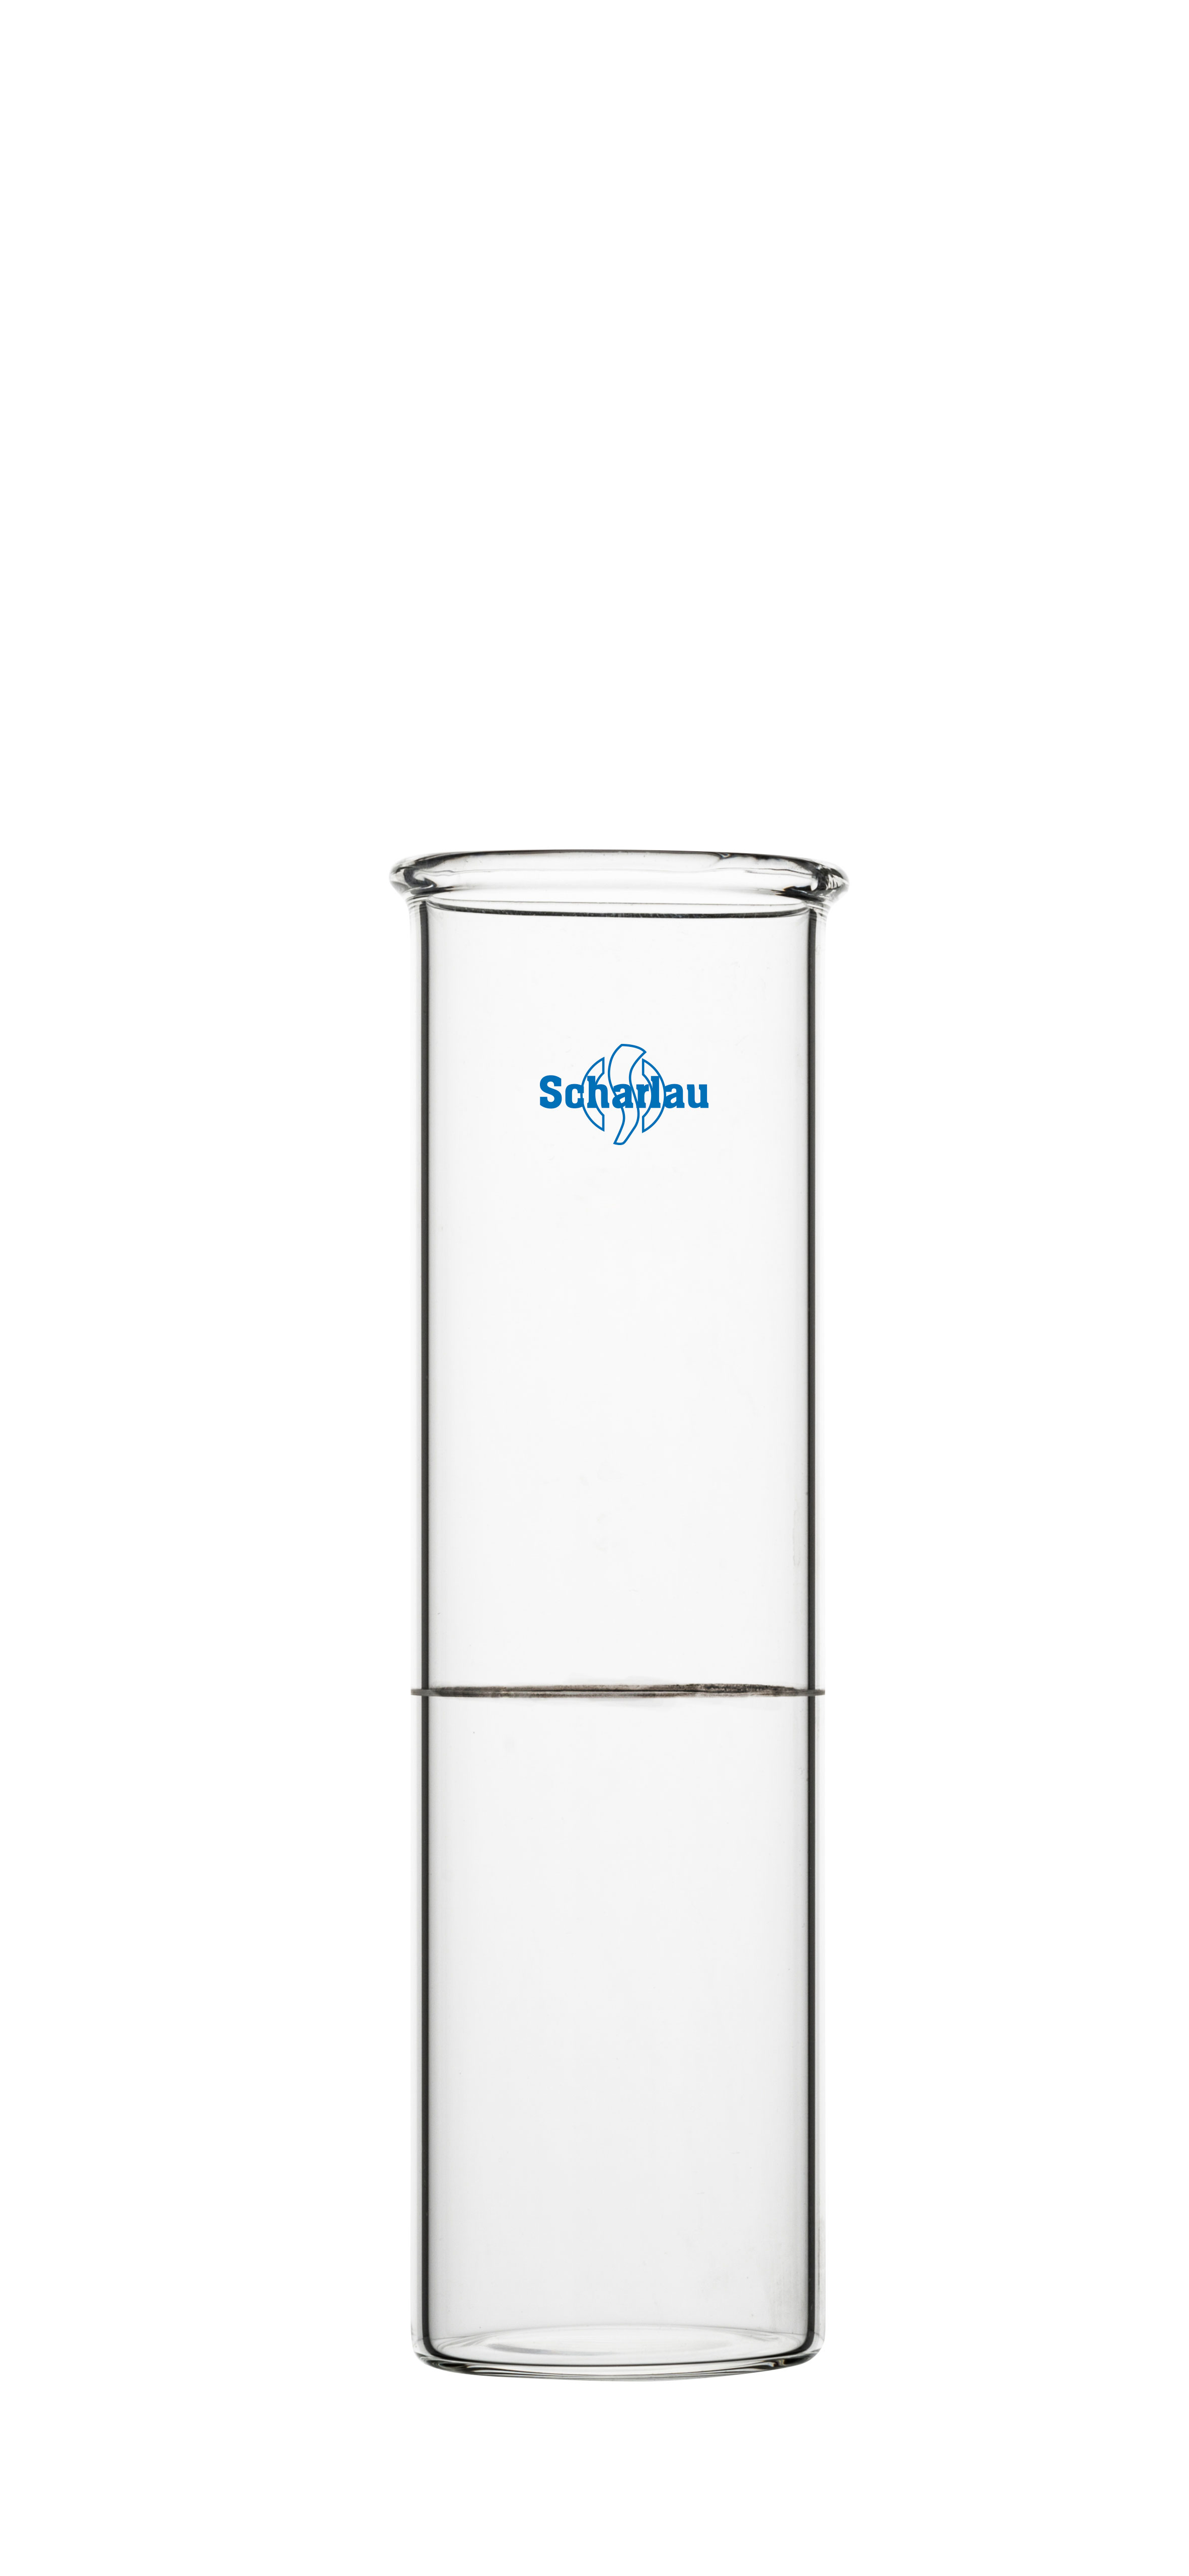 Vaso de ensayo de vidrio para la determinacion del Punto Congelacion, segun ASTM D97/93 y D2500  IP 15/95. Enrase a 45ml. Scharlau 